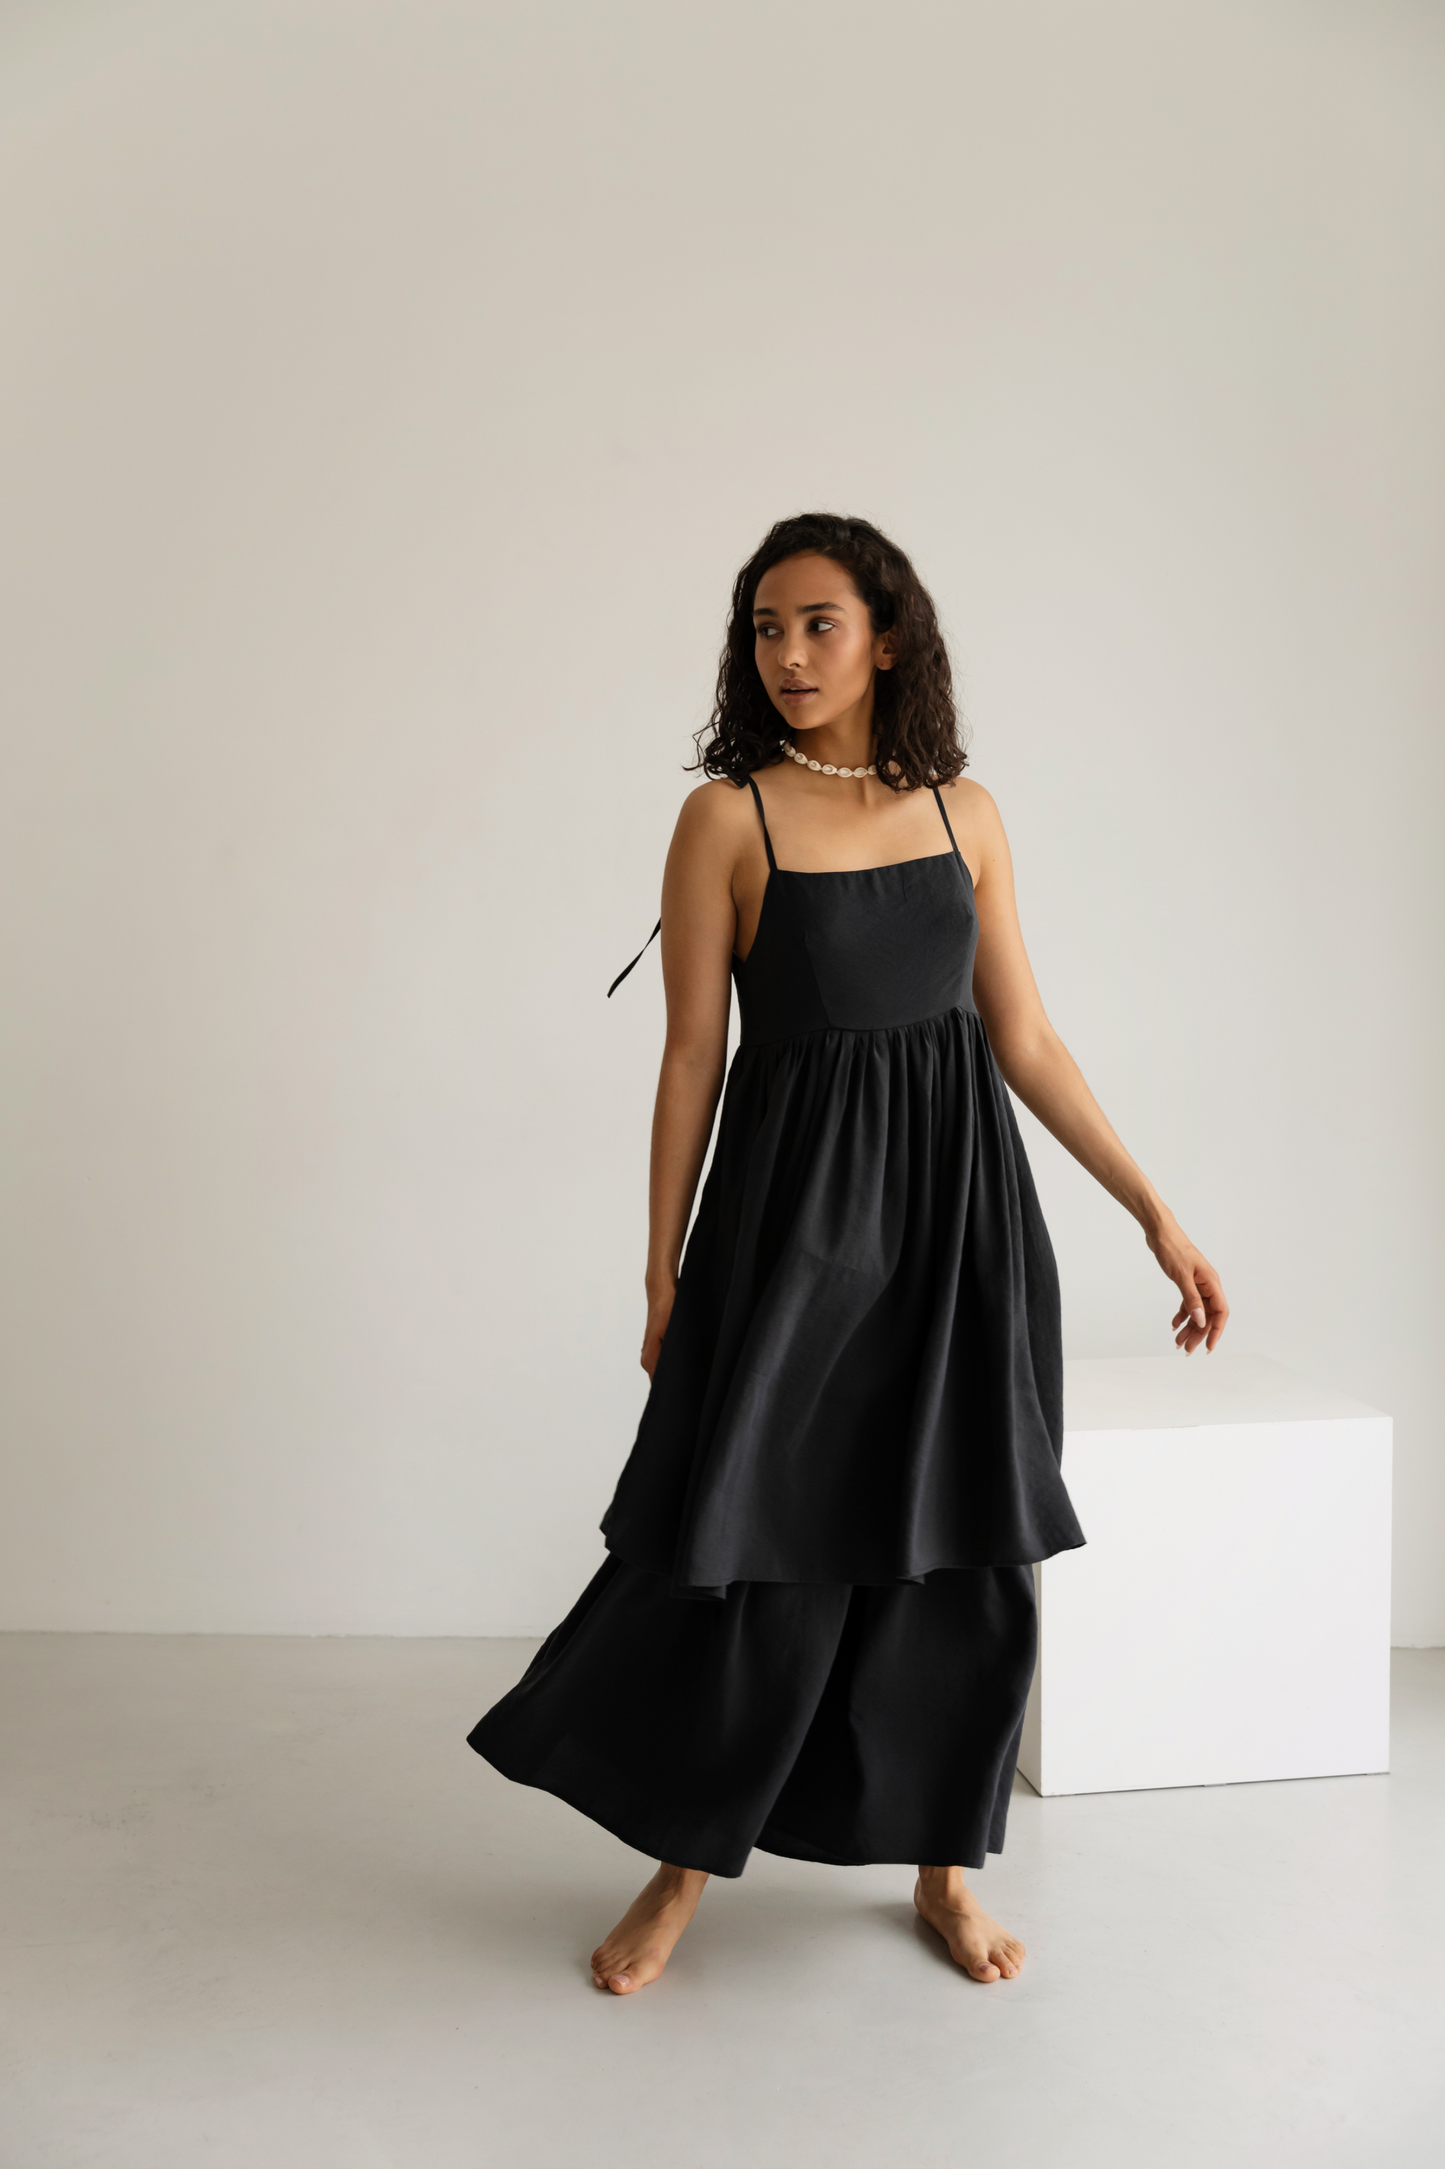 Two-layer black dress